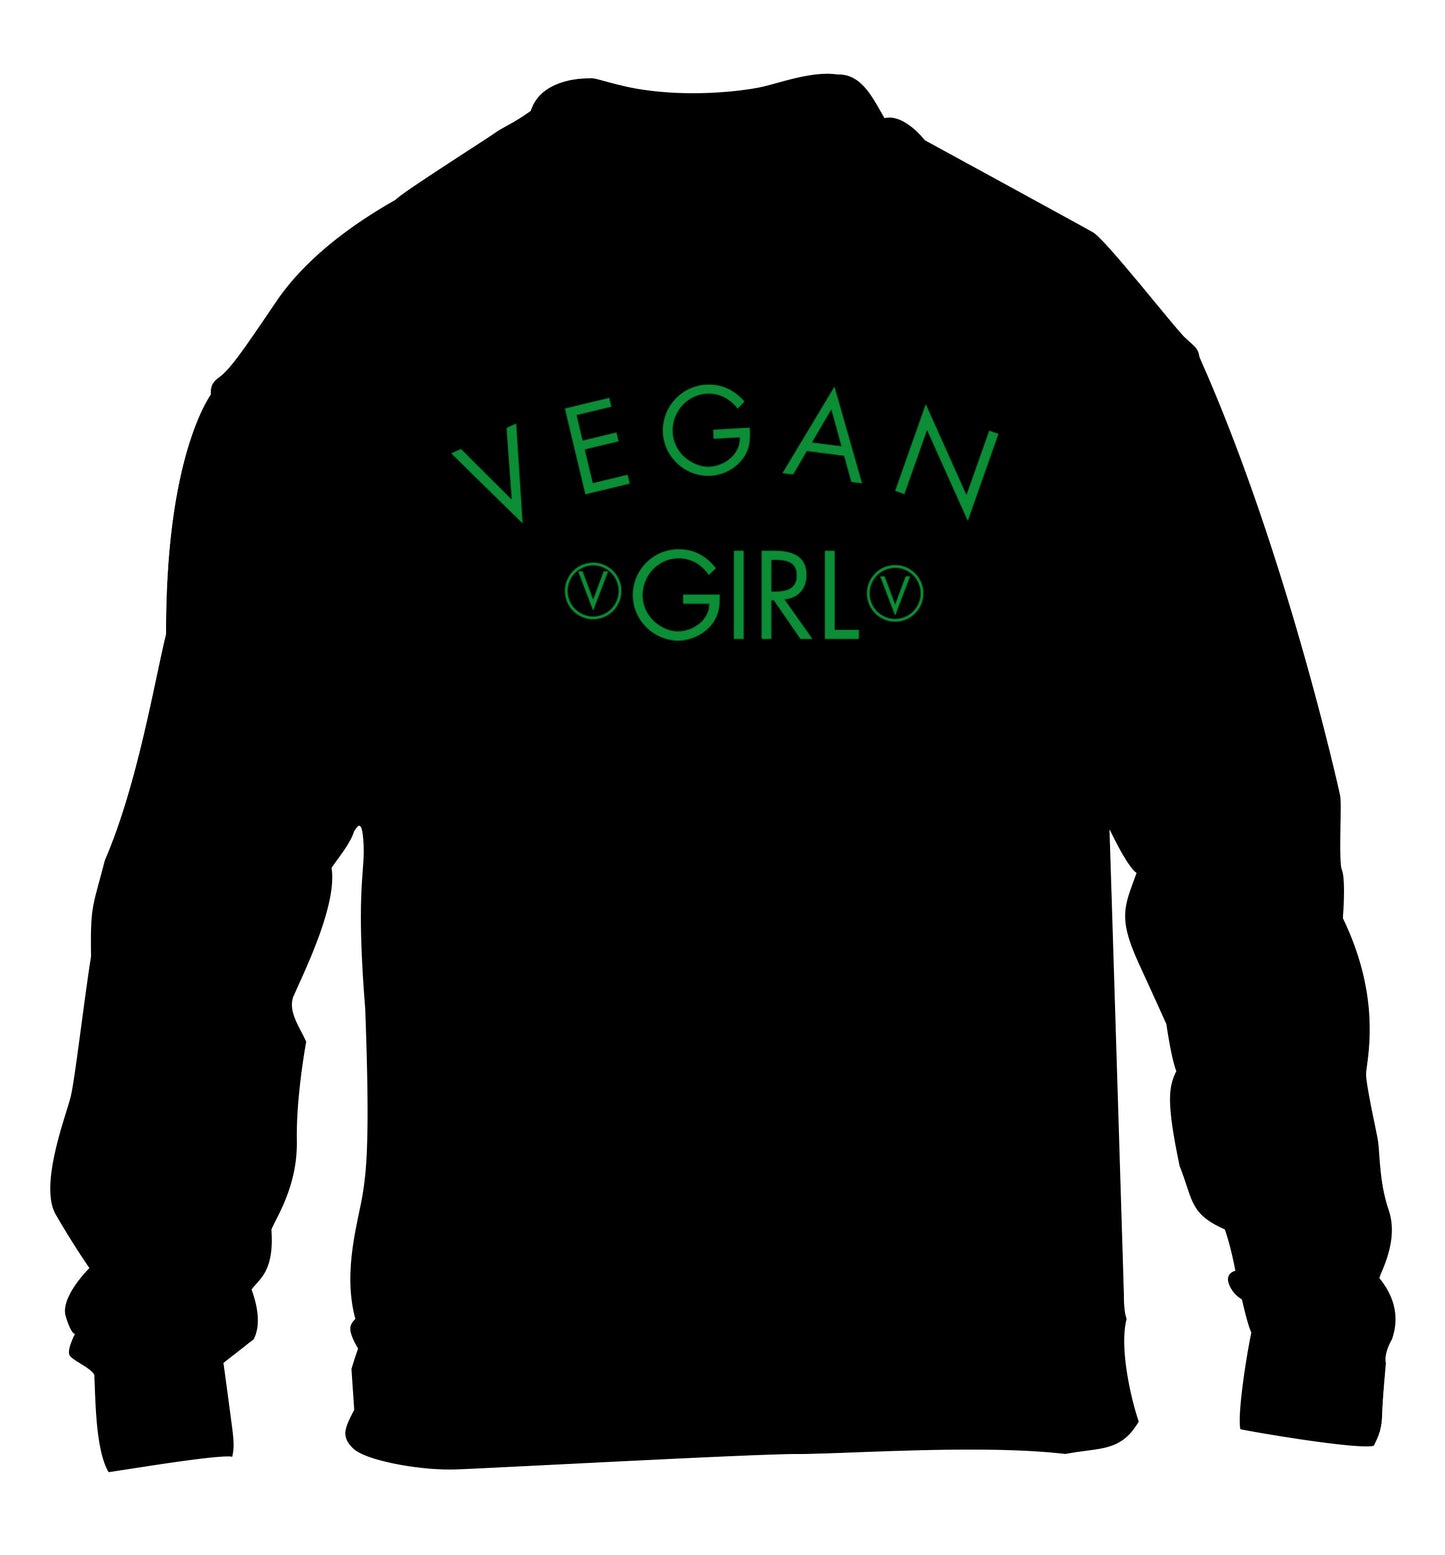 Vegan girl children's black sweater 12-14 Years